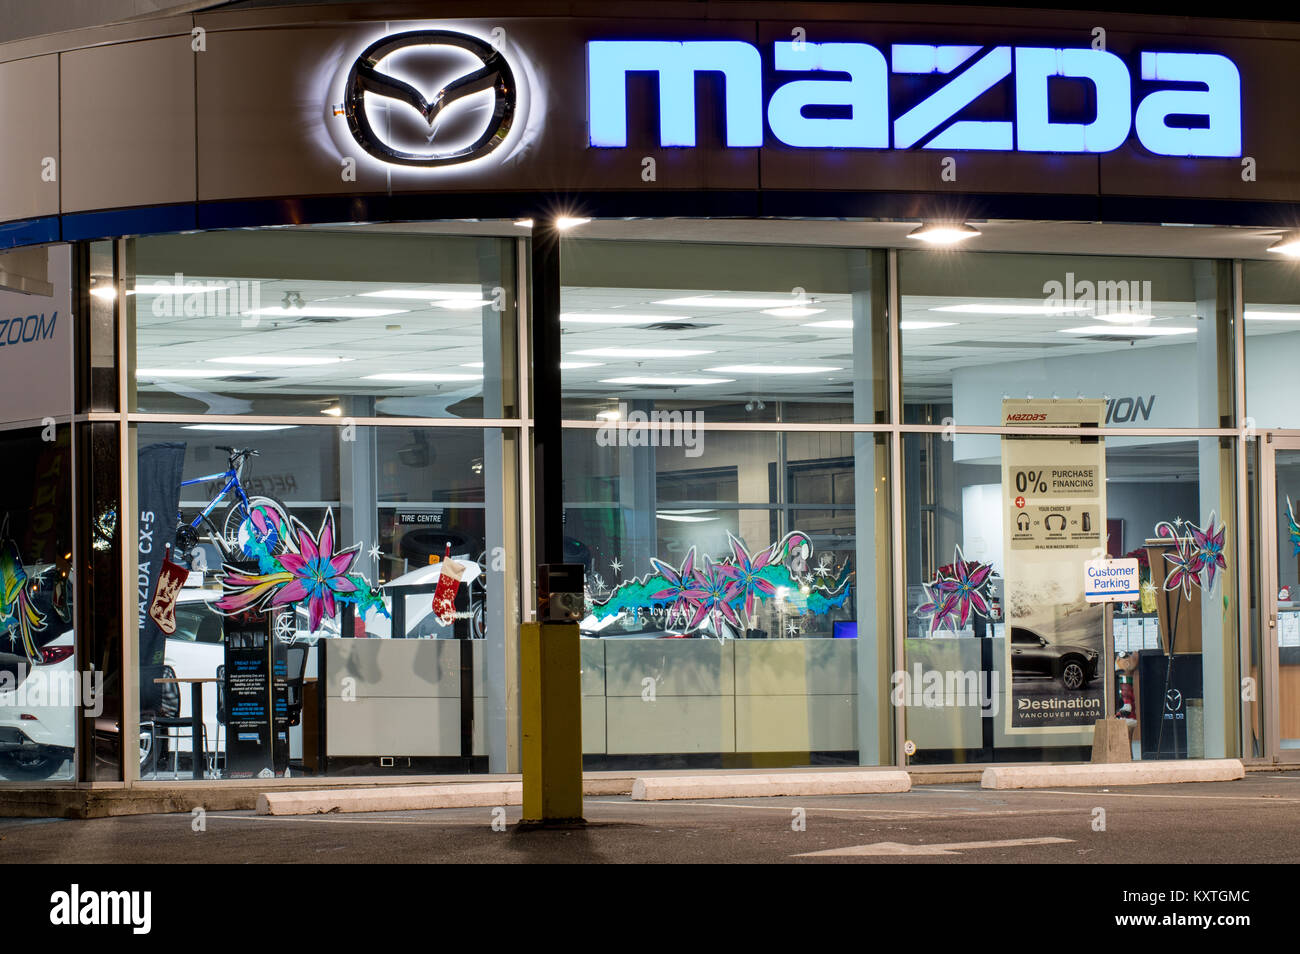 Vancouver. Canada - Janvier 9, 2018 : Mazda logo sur la façade de l'office de revendeur officiel. Mazda Motor Corporation est une marque automobile japonaise, de l'automobile m Banque D'Images